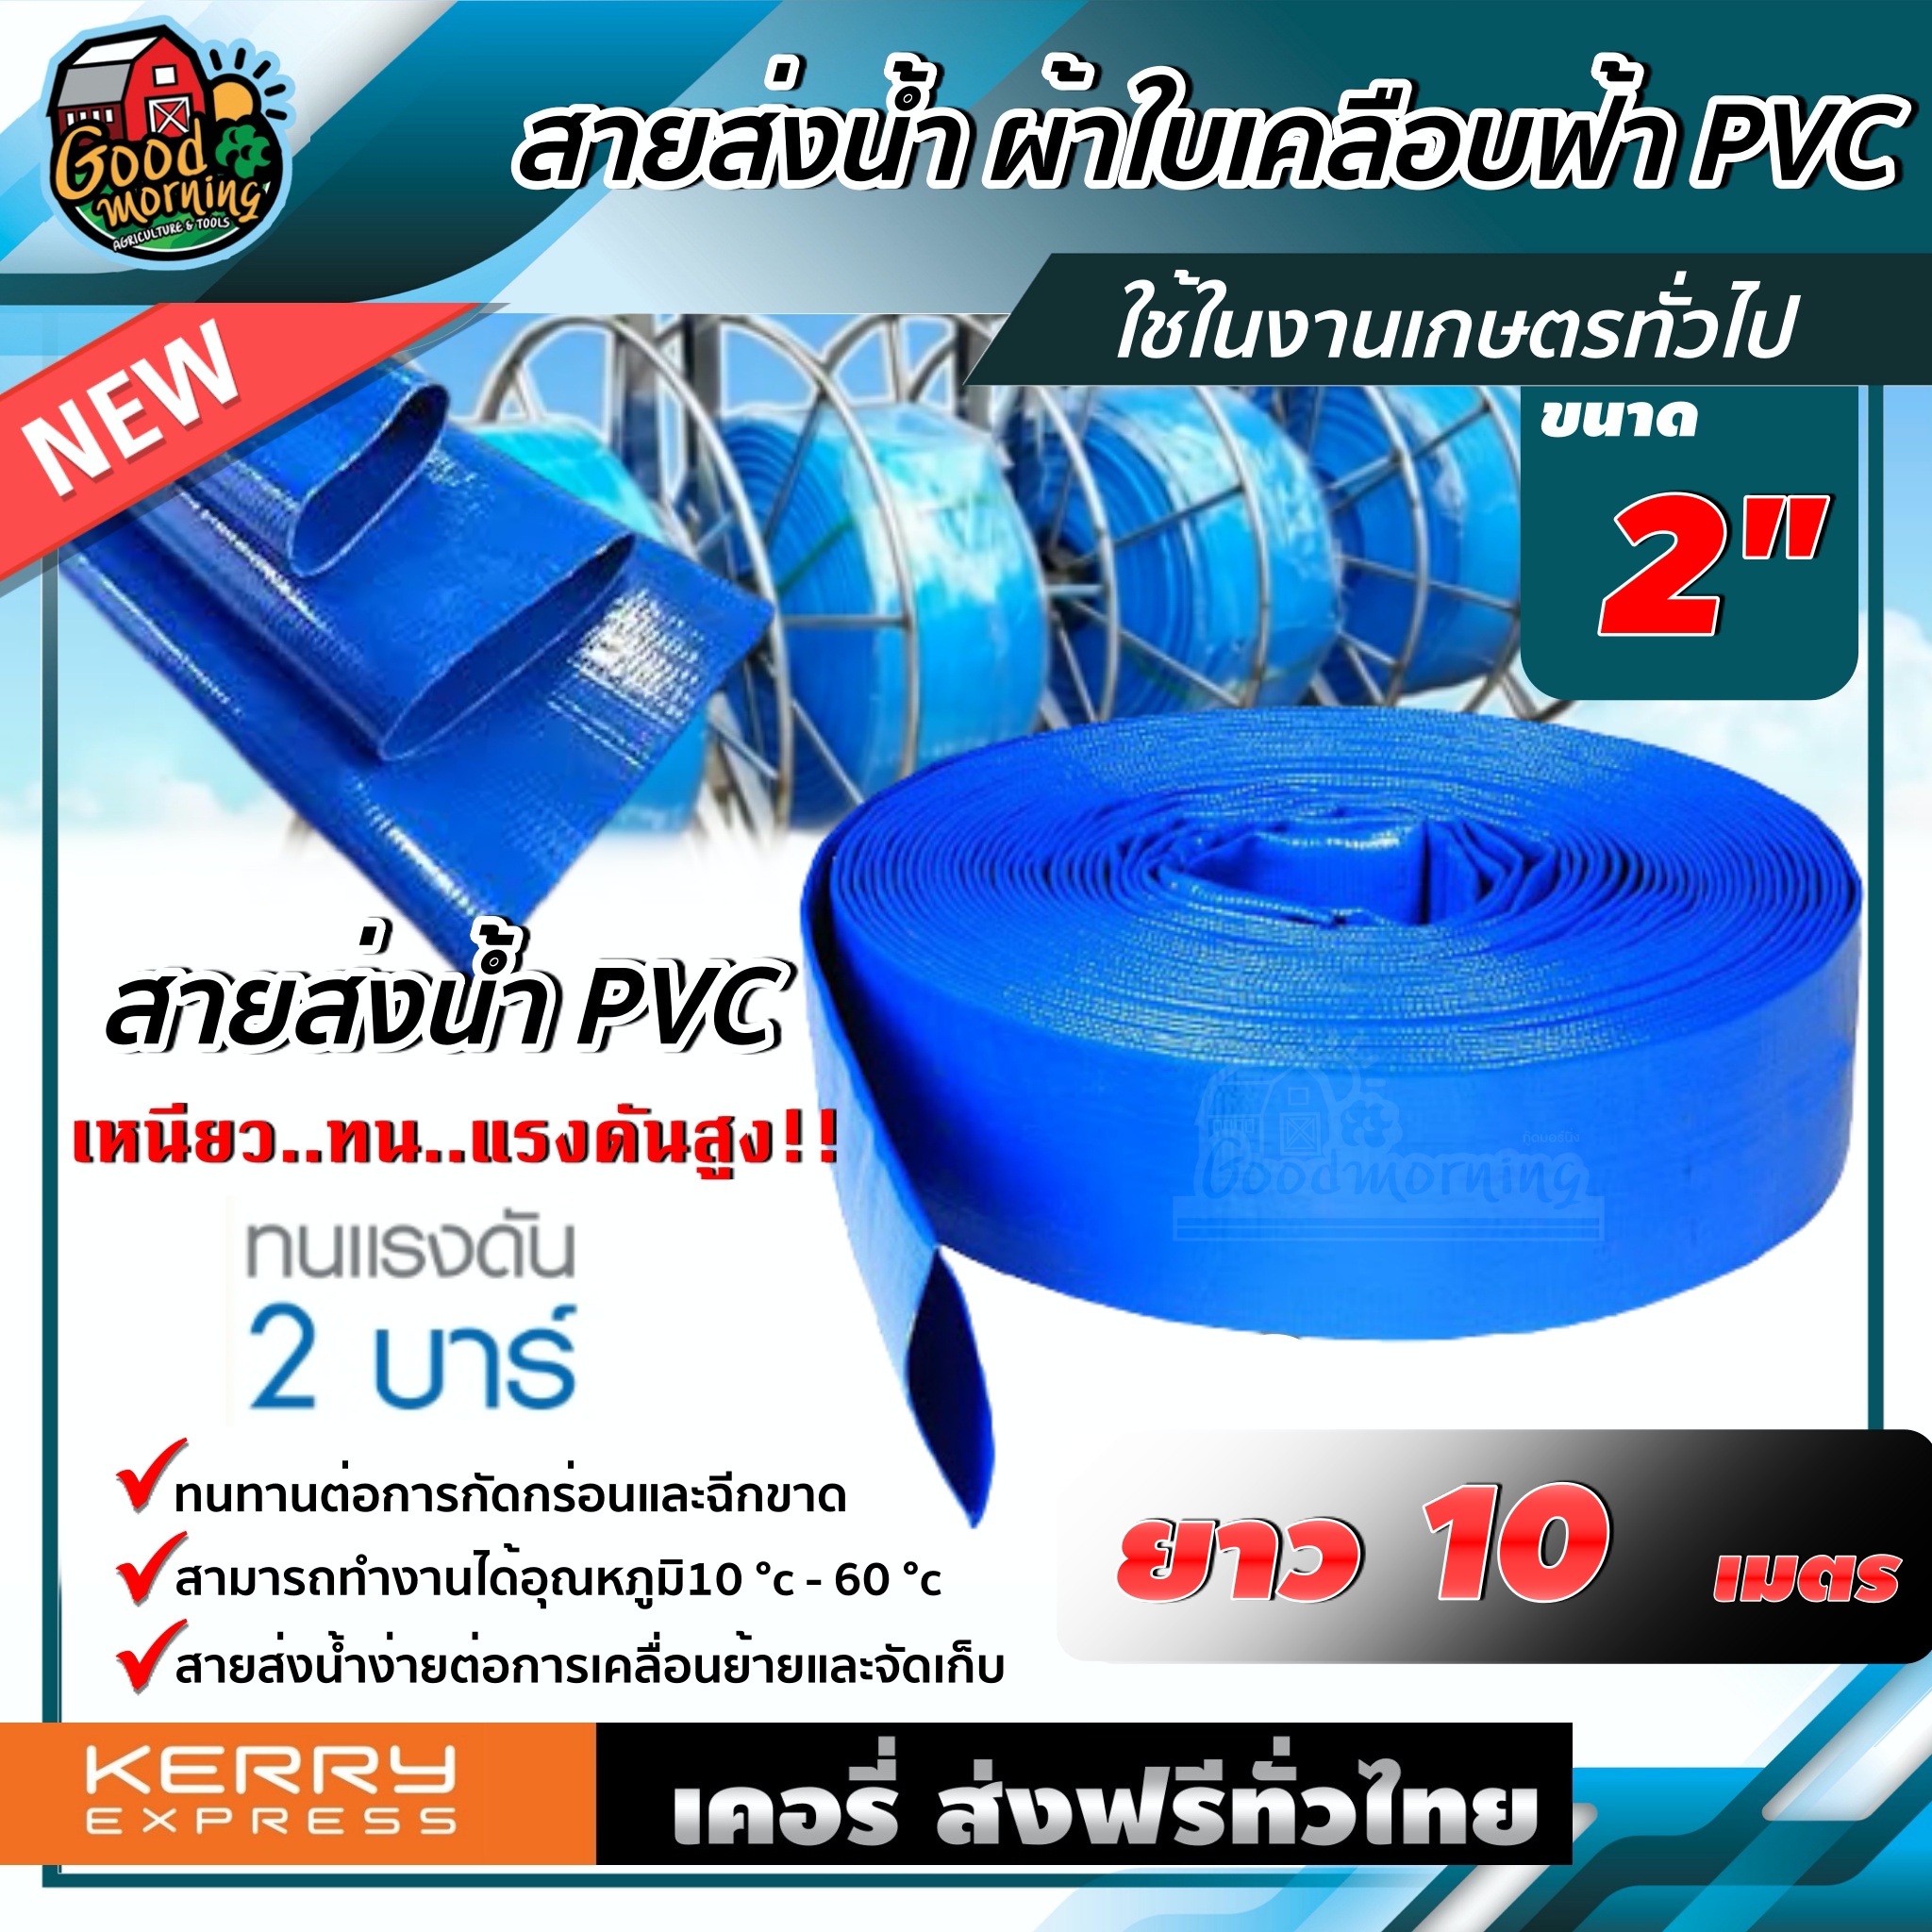 สายส่งน้ำ ผ้าใบเคลือบฟ้า PVC 2 นิ้ว ยาว 10 เมตร สายส่งน้ำสีฟ้า สายดับเพลิง ใช้ในงานเกษตรทั่วไป อุปกรณ์เกษตร สวน ระบบน้ำ ส่งฟรีทั่วไทย เก็บเงินปลายทาง